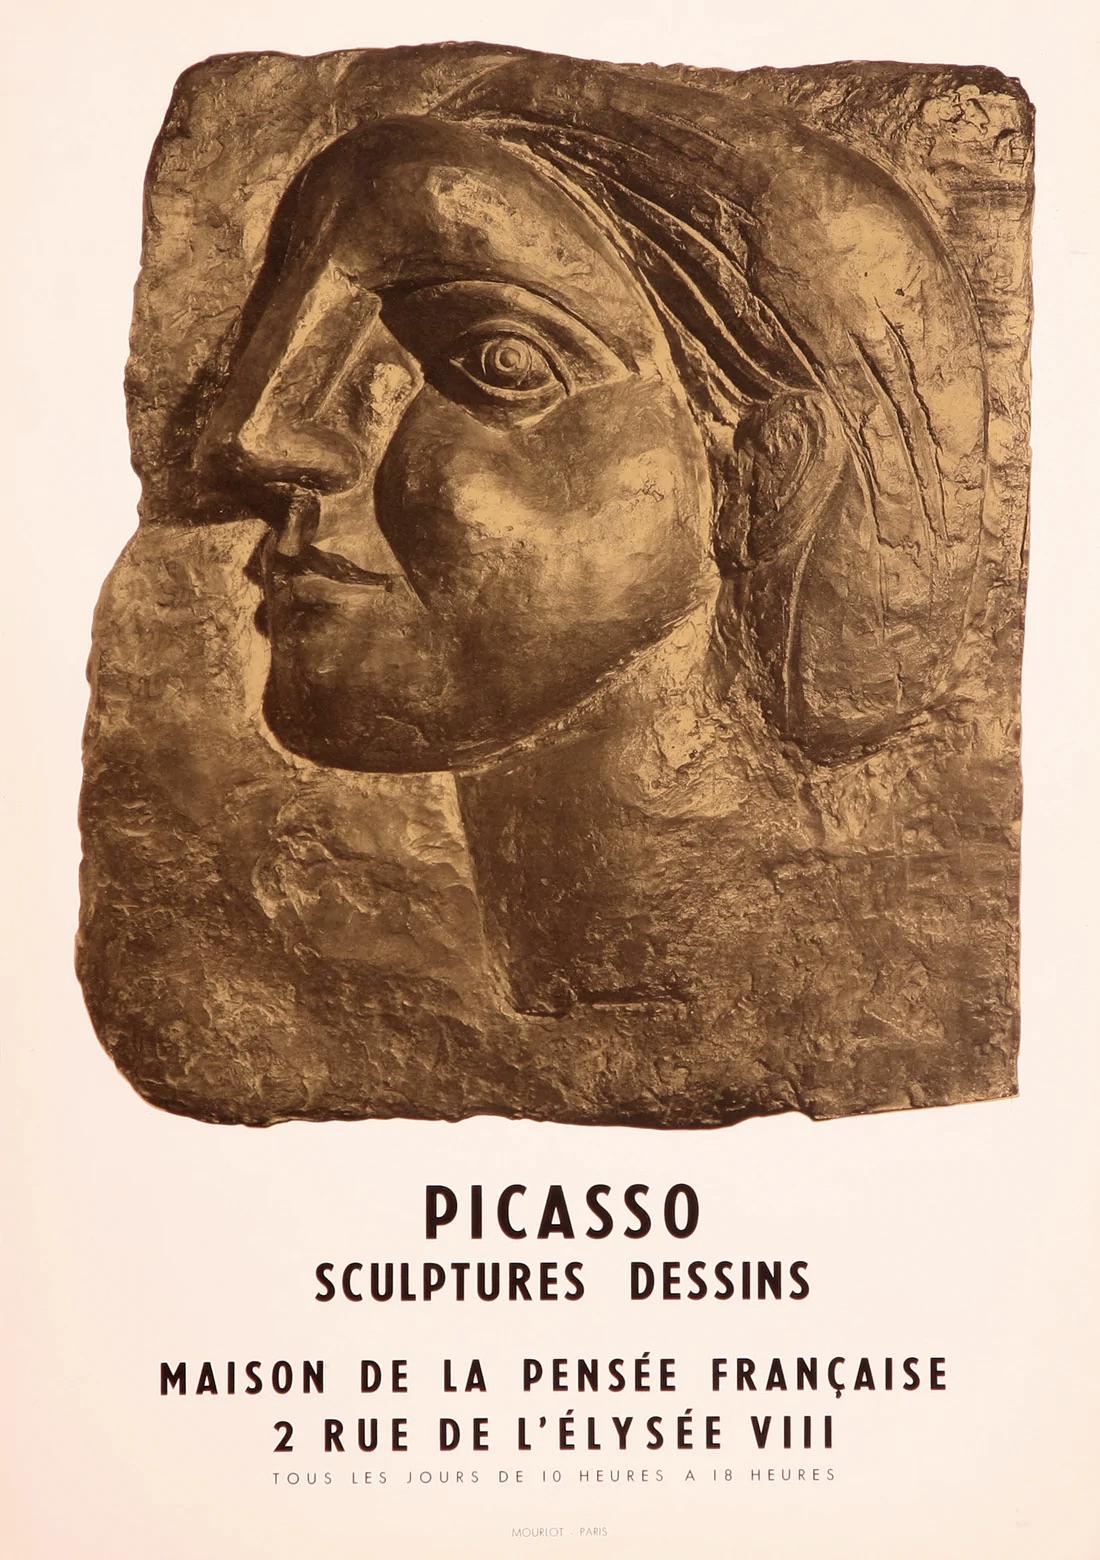 Tete De Femme de Profil (Marie-Therese) - Sculptures Dessins, 1958 - Print by (after) Pablo Picasso